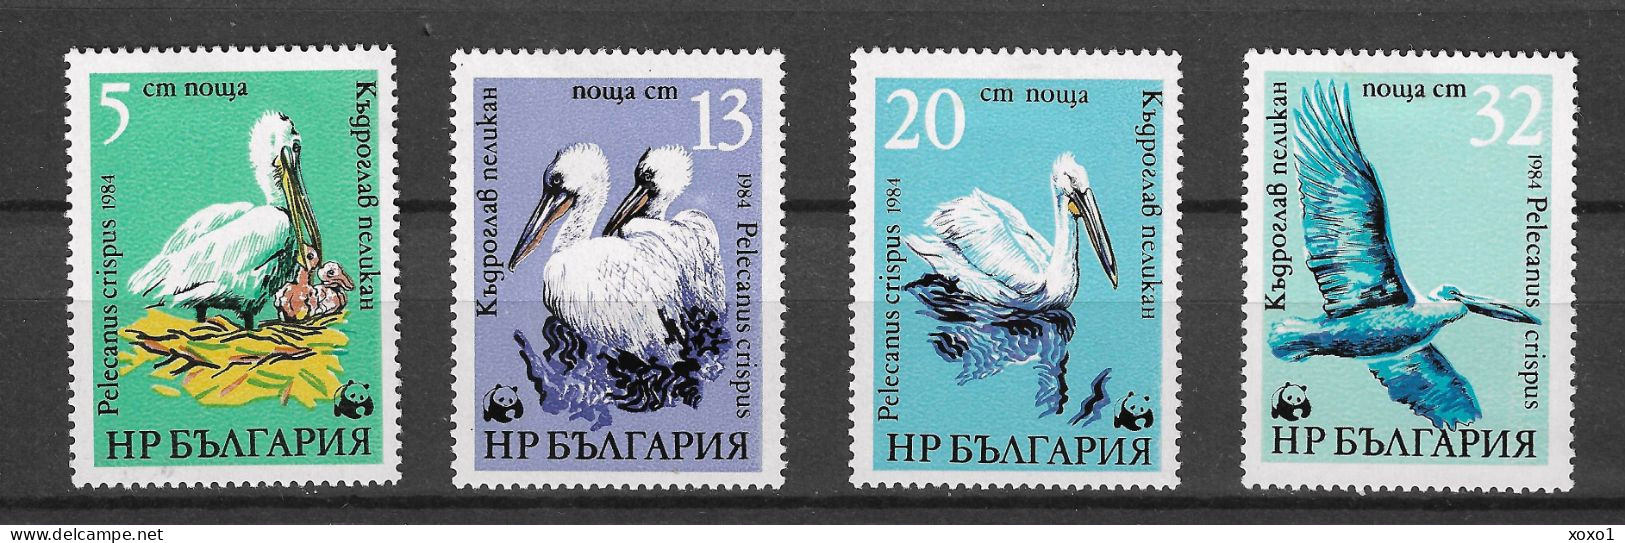 Bulgaria 1984 MiNr. 3303 - 3306 Bulgarien Birds Dalmatian Pelicans WWF 4v MLH * 6.50 € - Pelicans